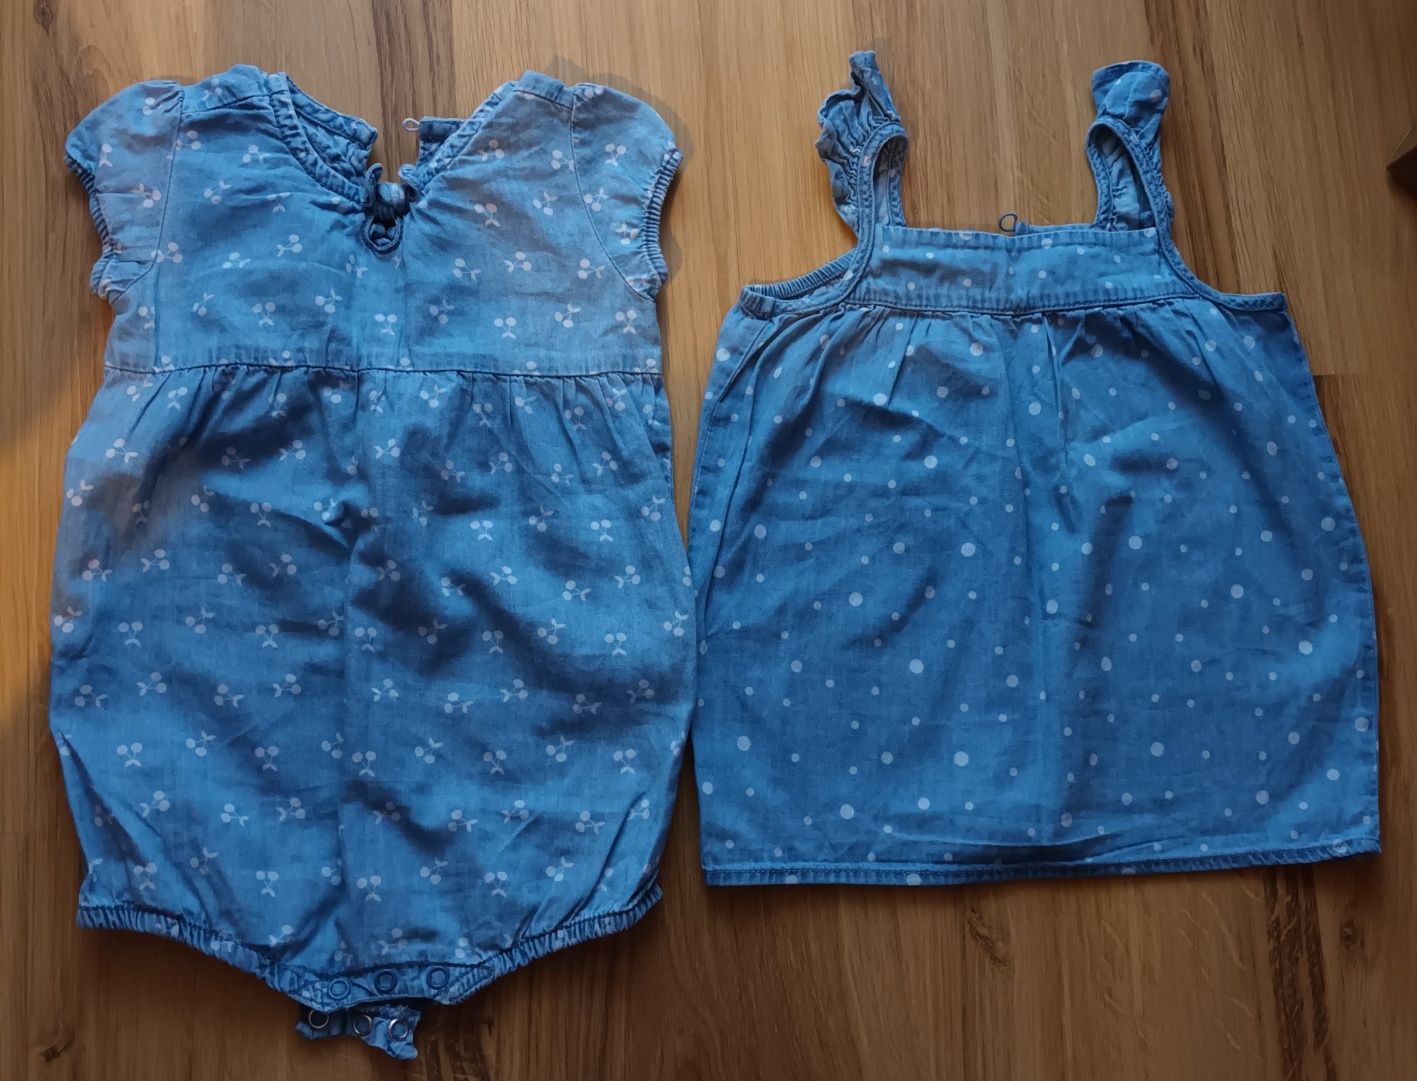 Zestaw: sukienka i rampers jeans na lato dla dziewczynki, rozmiar 80